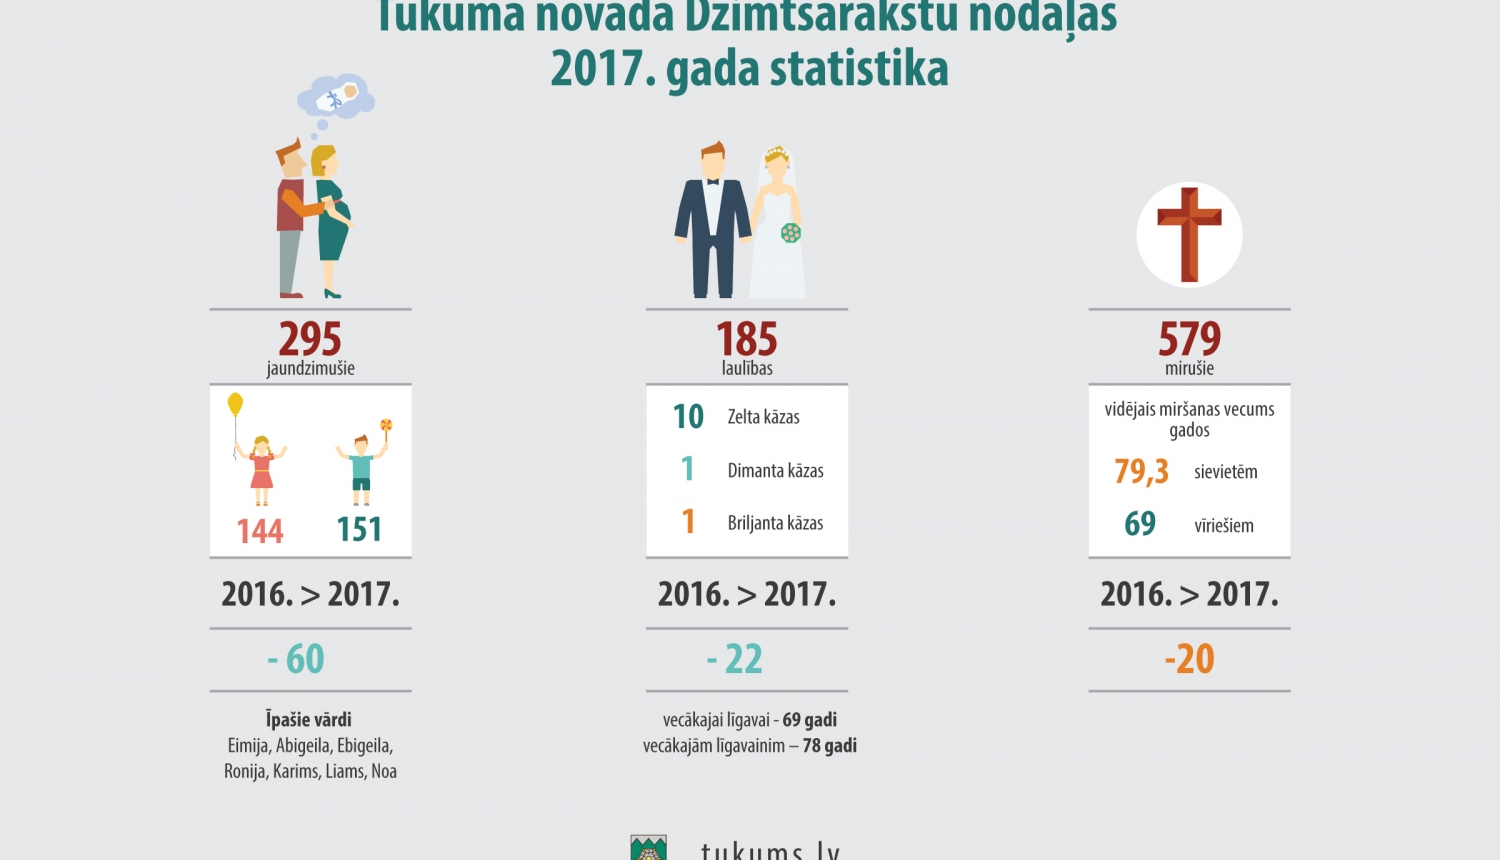 Tukuma novada Dzimtsarakstu nodaļas 2017.gada statistika